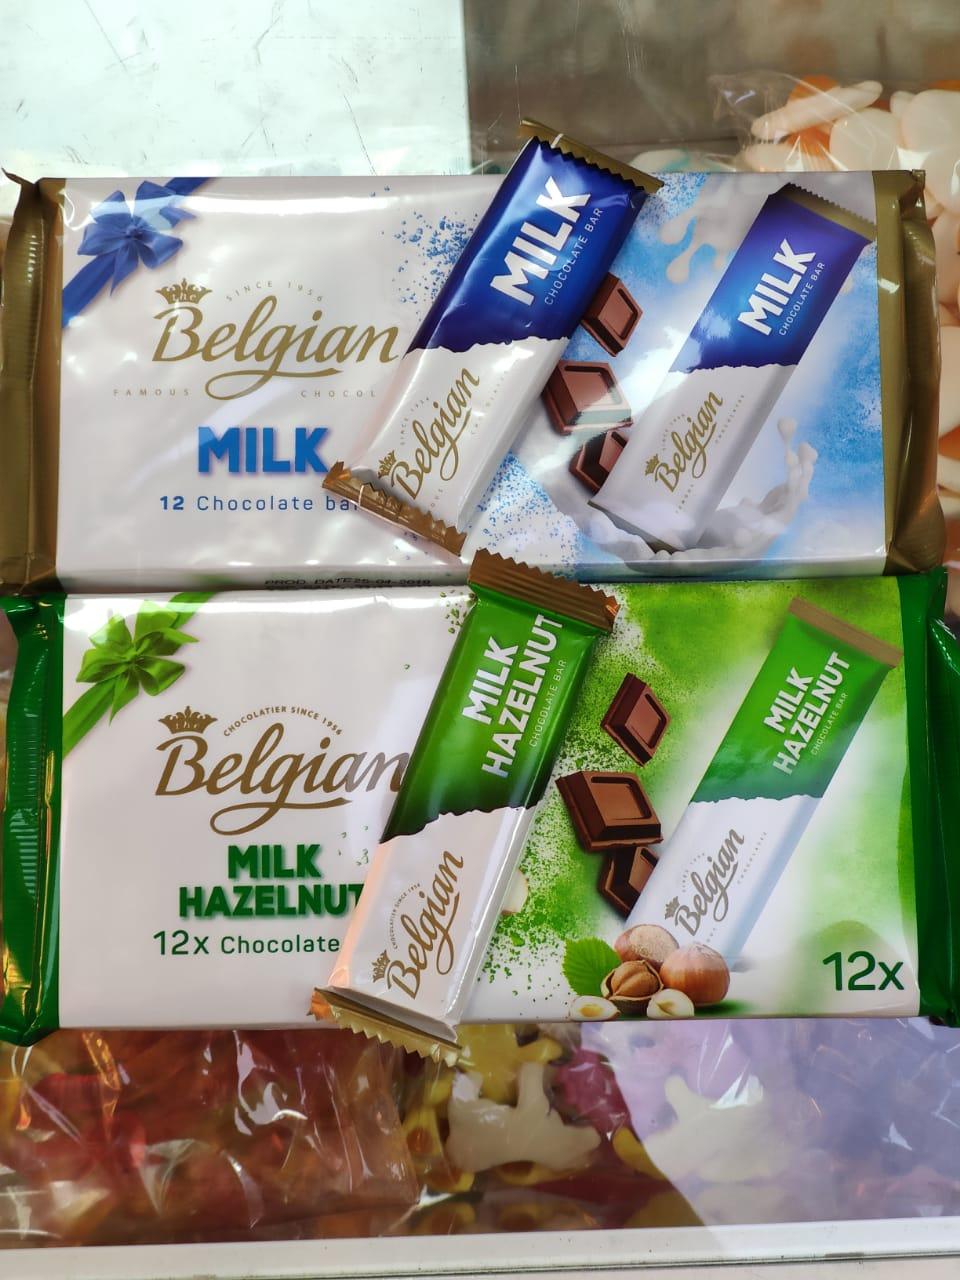 Шоколадный батончик Belgian 15 гр, (12 шт в упаковке) (Milk, Hazelnuts)